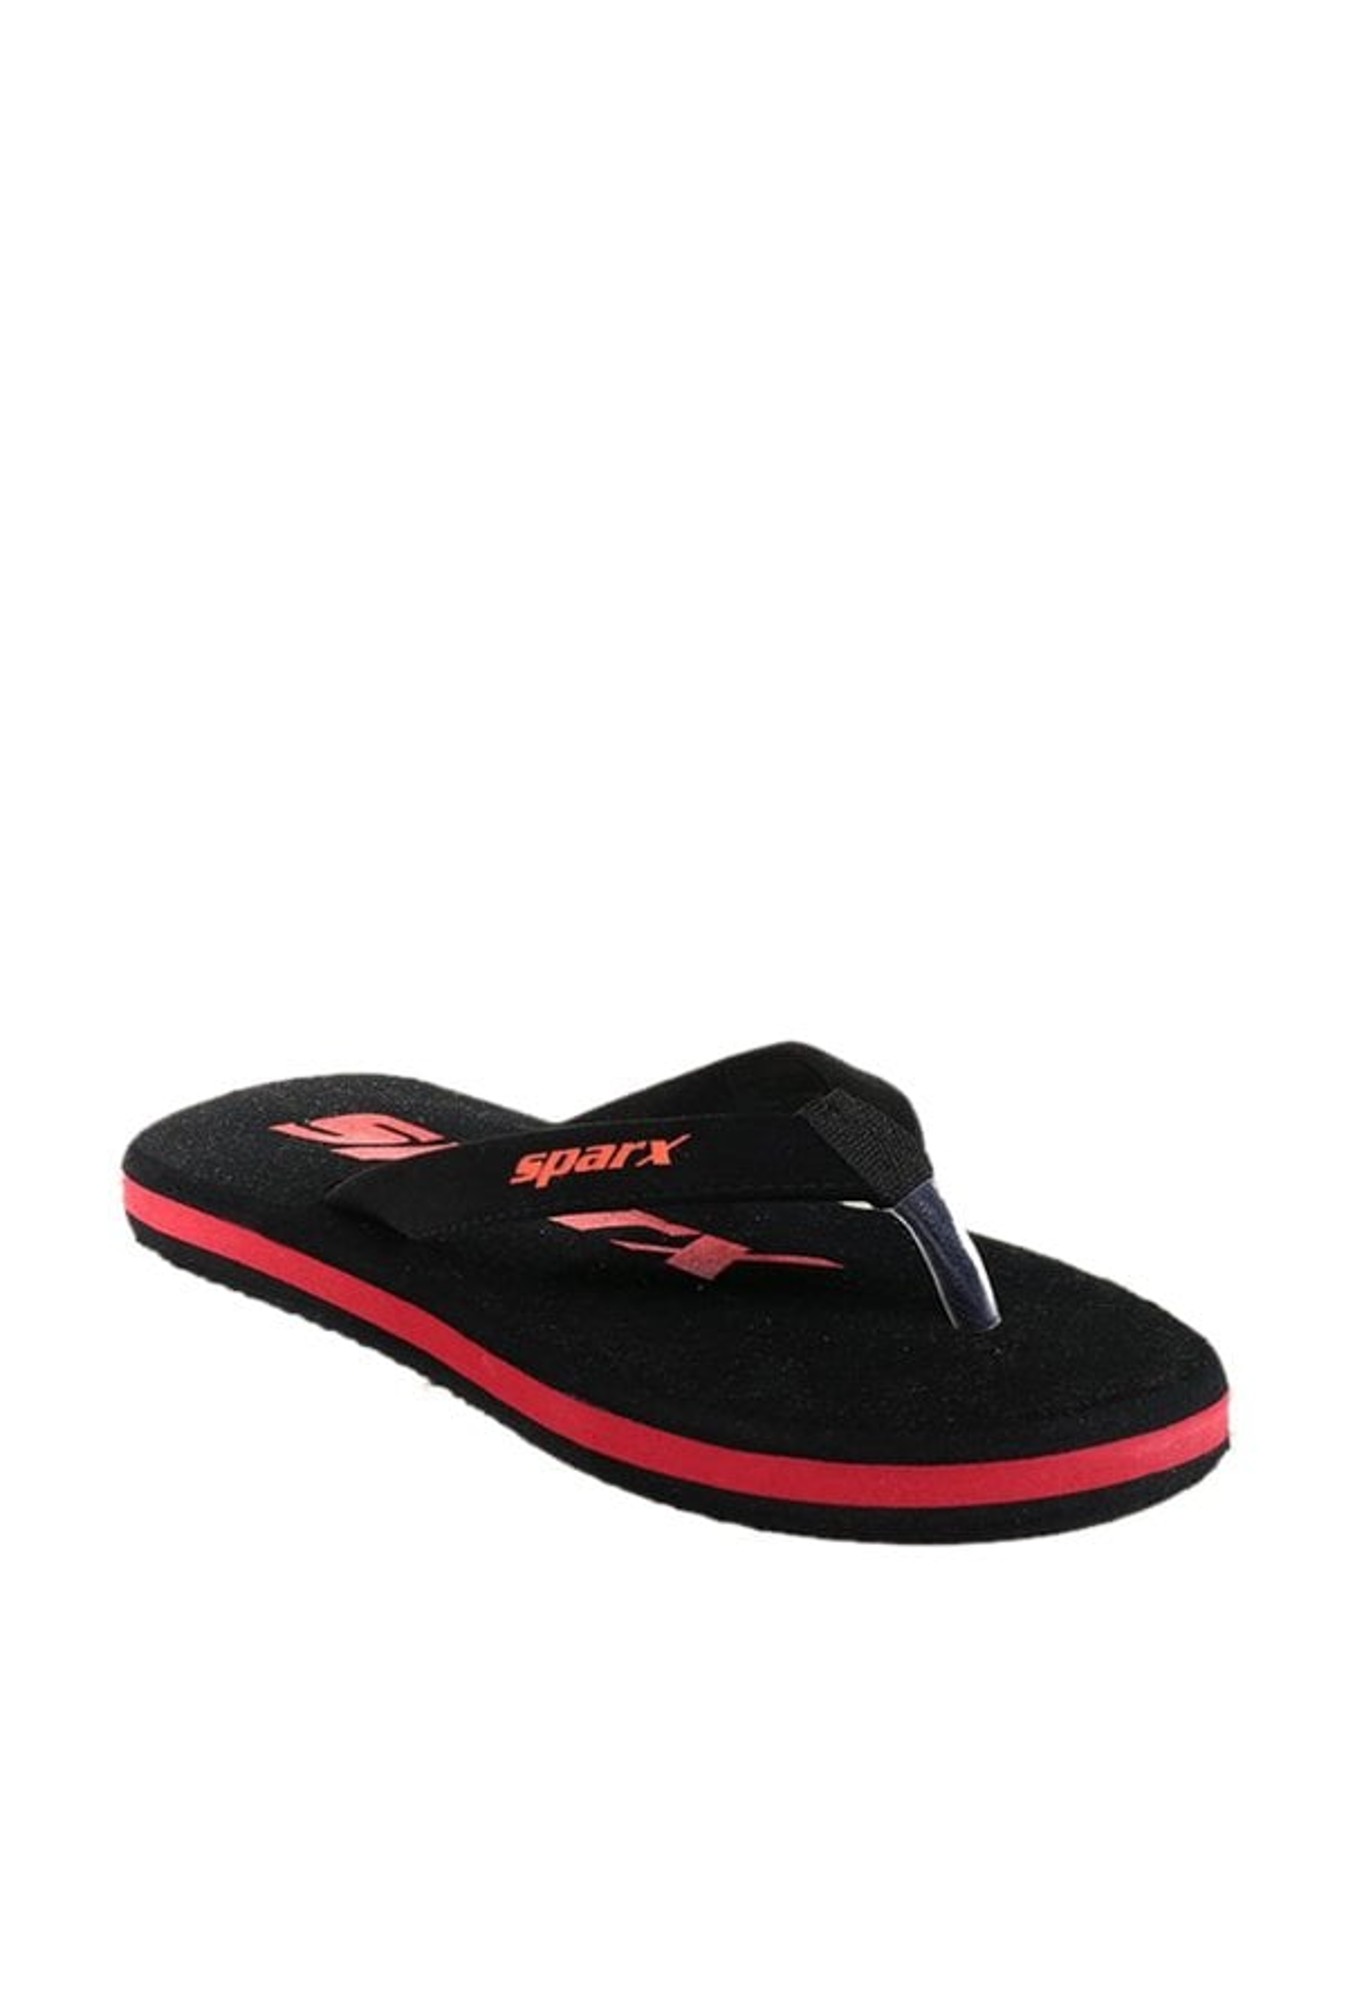 Men SPARX Flip Flops & Slides | Slippers For Men Tan * Relaxsko-sgquangbinhtourist.com.vn